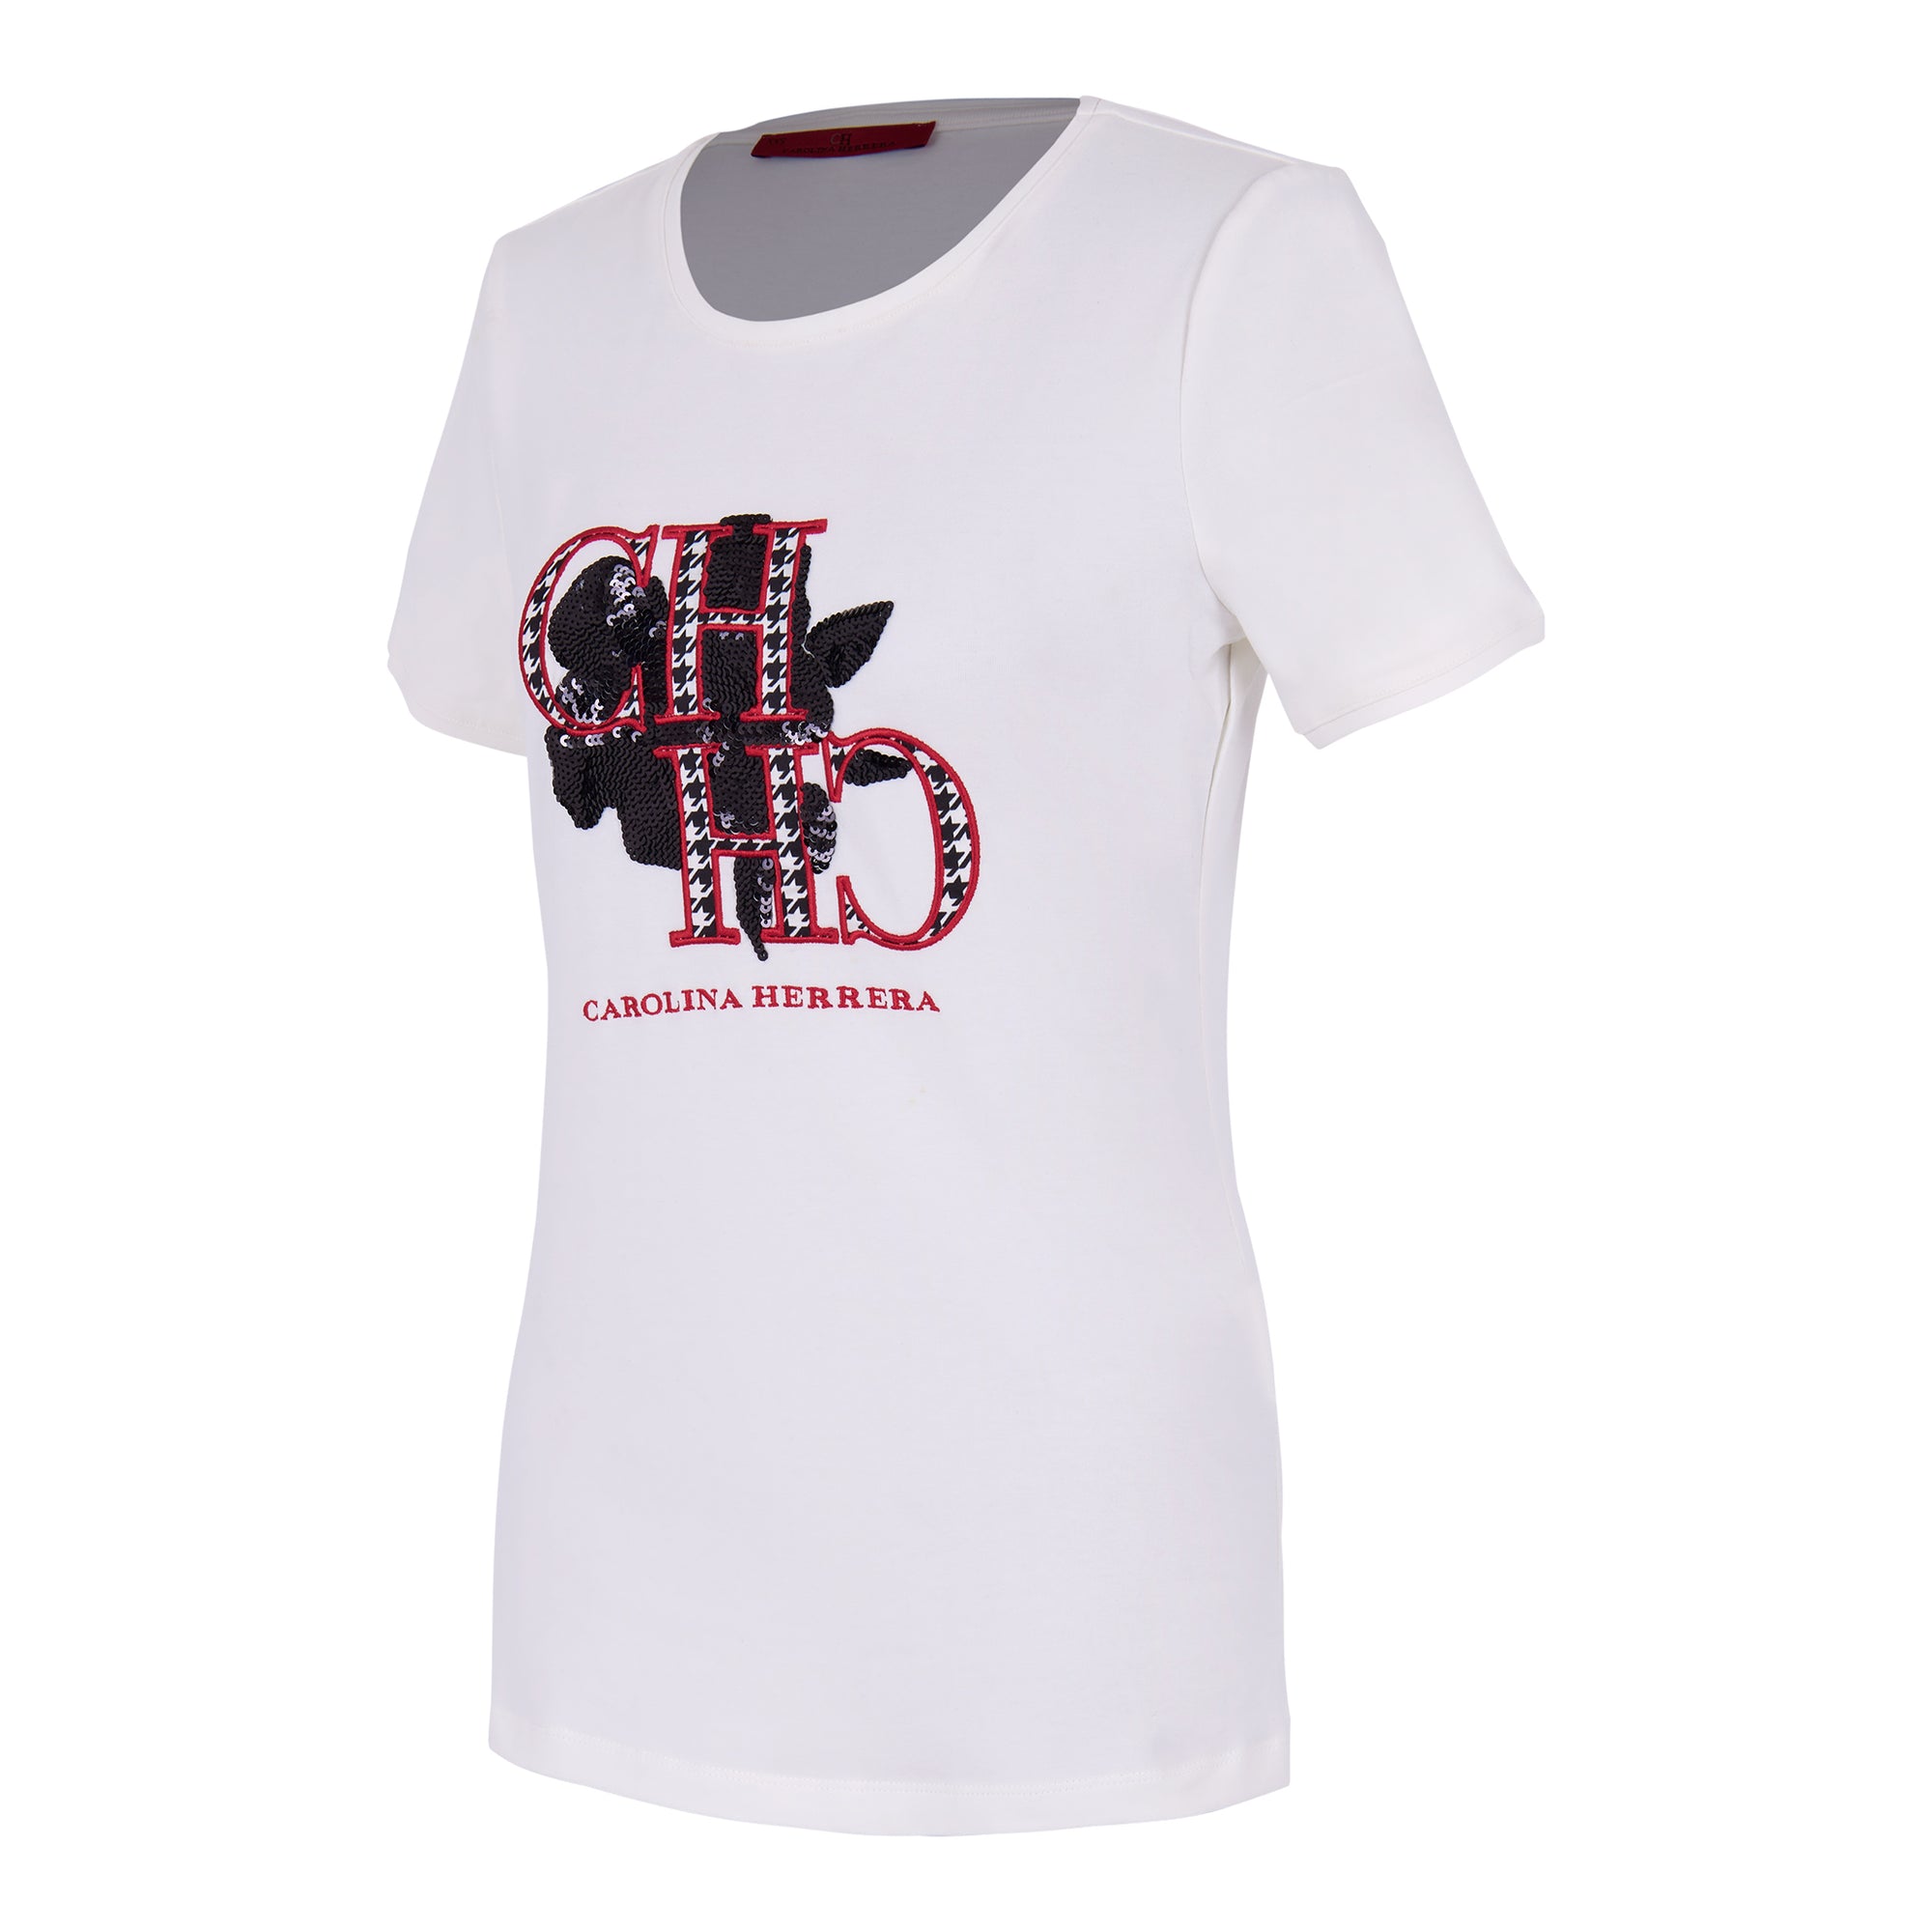 Carolina Herrera White T-shirt with logo